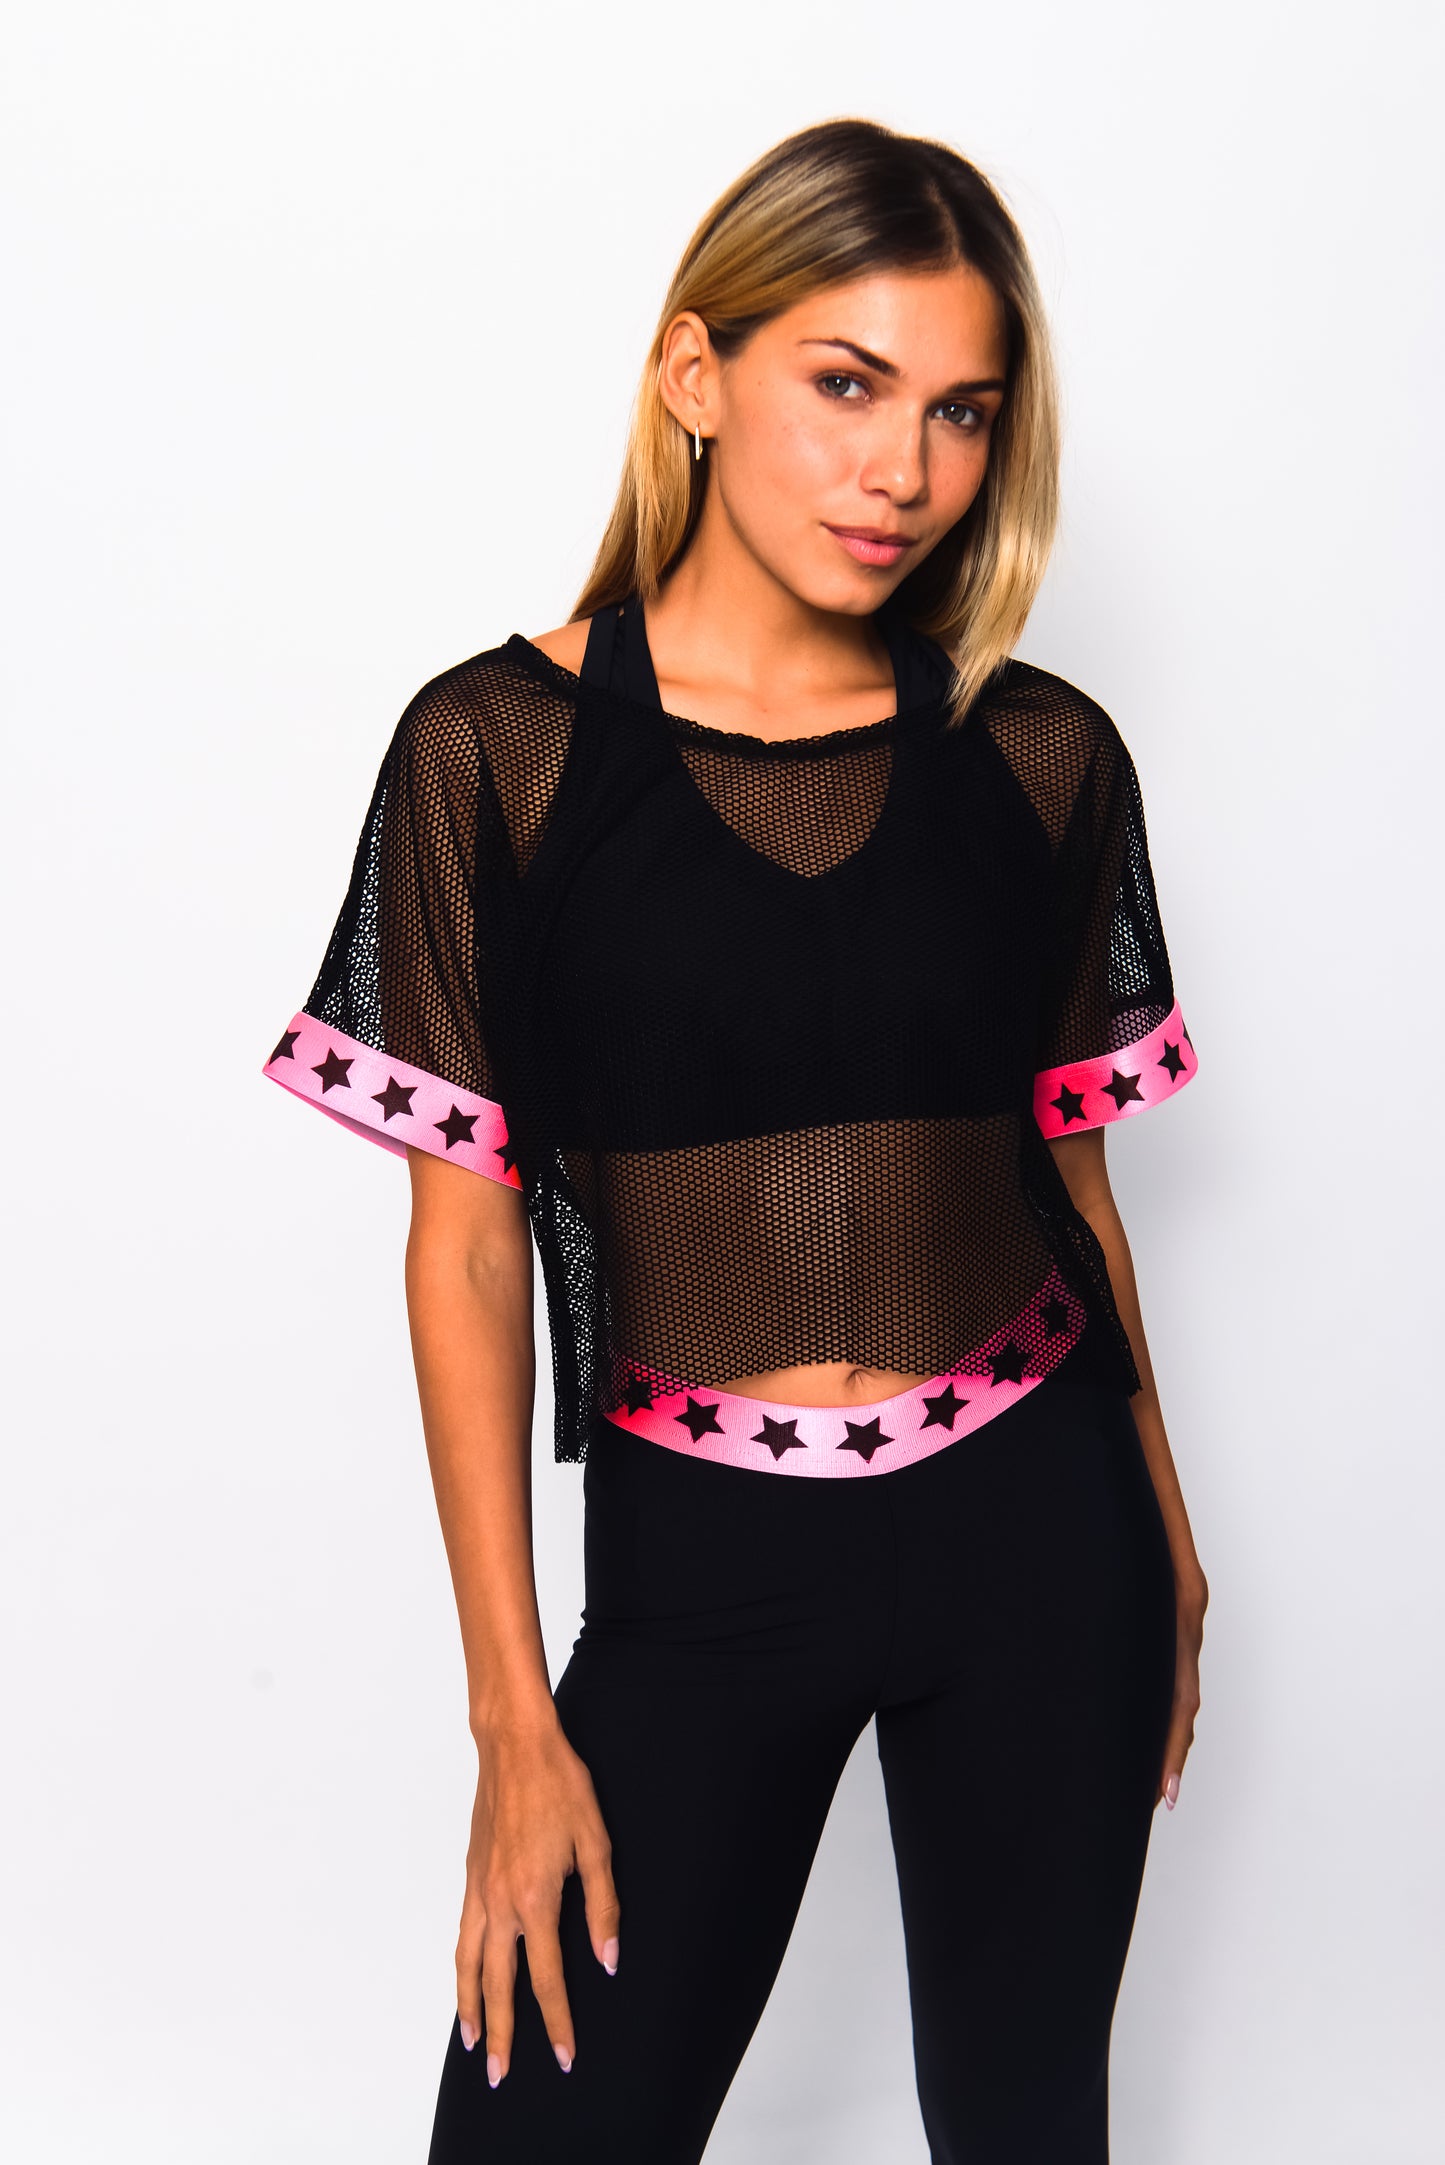 Stars neon pink activewear 3 pieces set